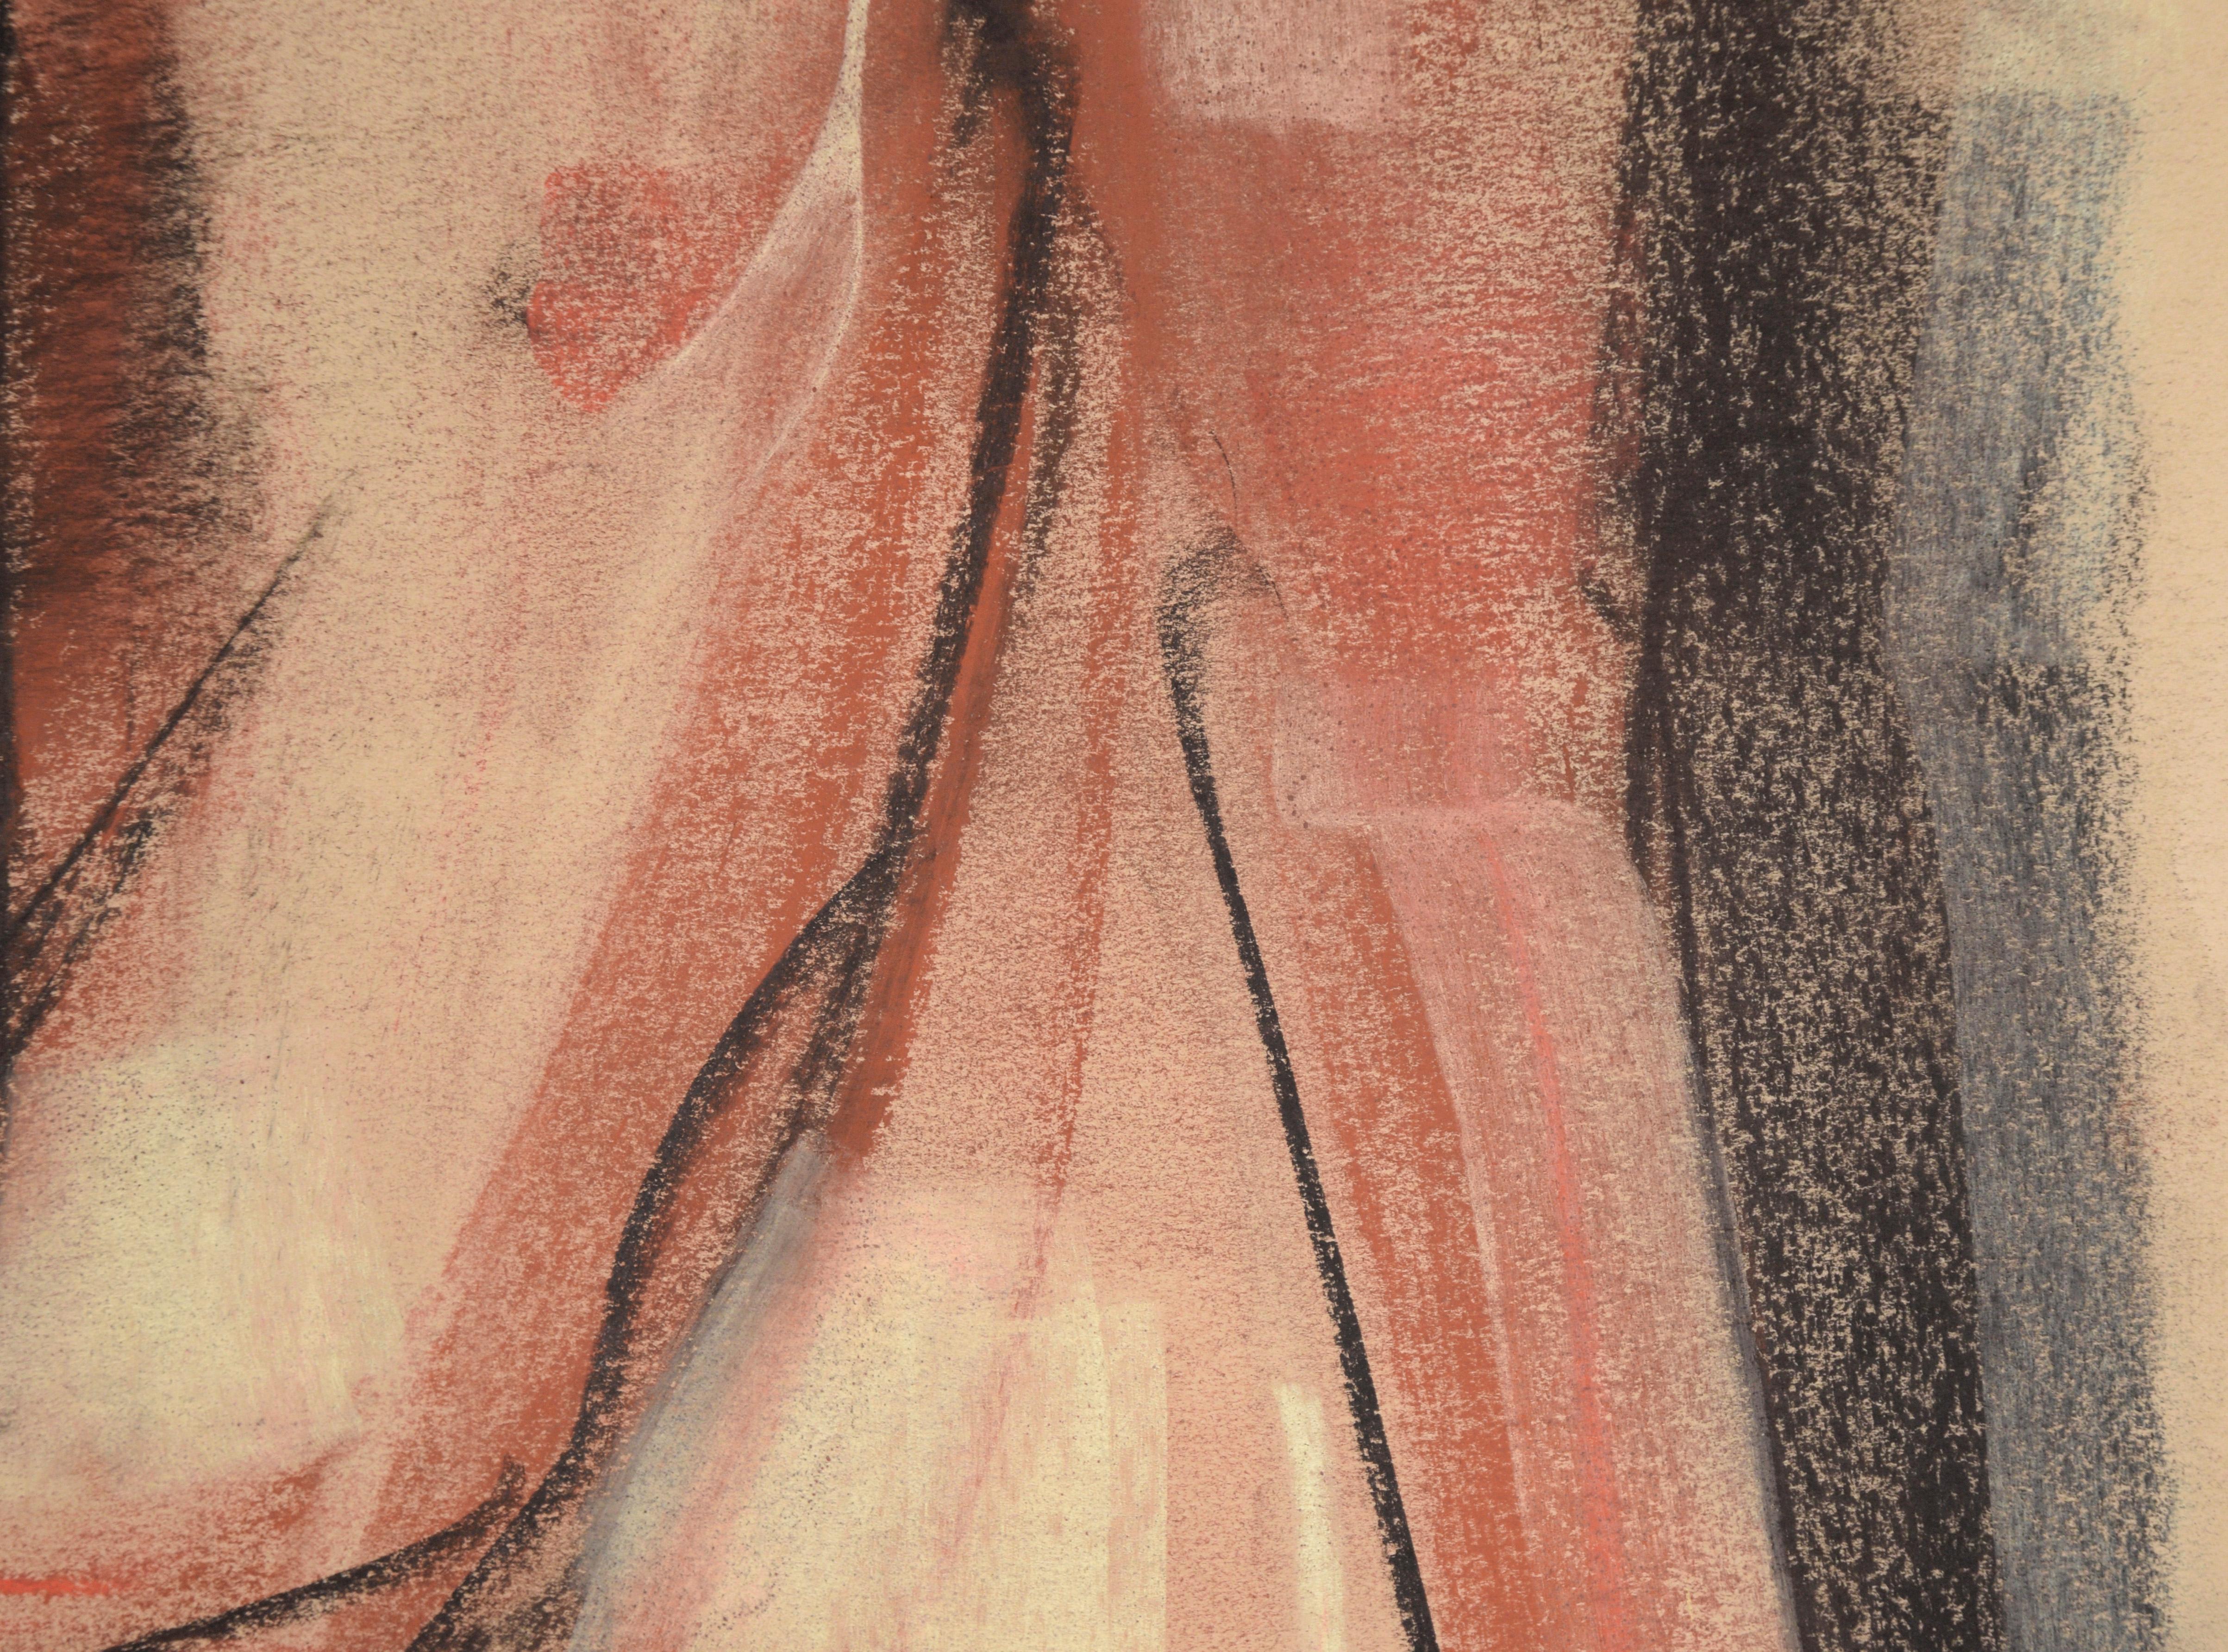 Sitzender männlicher Akt in Holzkohle auf Papier

Figurative Arbeit mit einem männlichen Akt der Künstlerin Heather Speck (Amerikanerin, geb. 1978) aus Santa Cruz und San Francisco. Das Modell sitzt und stützt sich auf seine Hände. Er blickt leicht